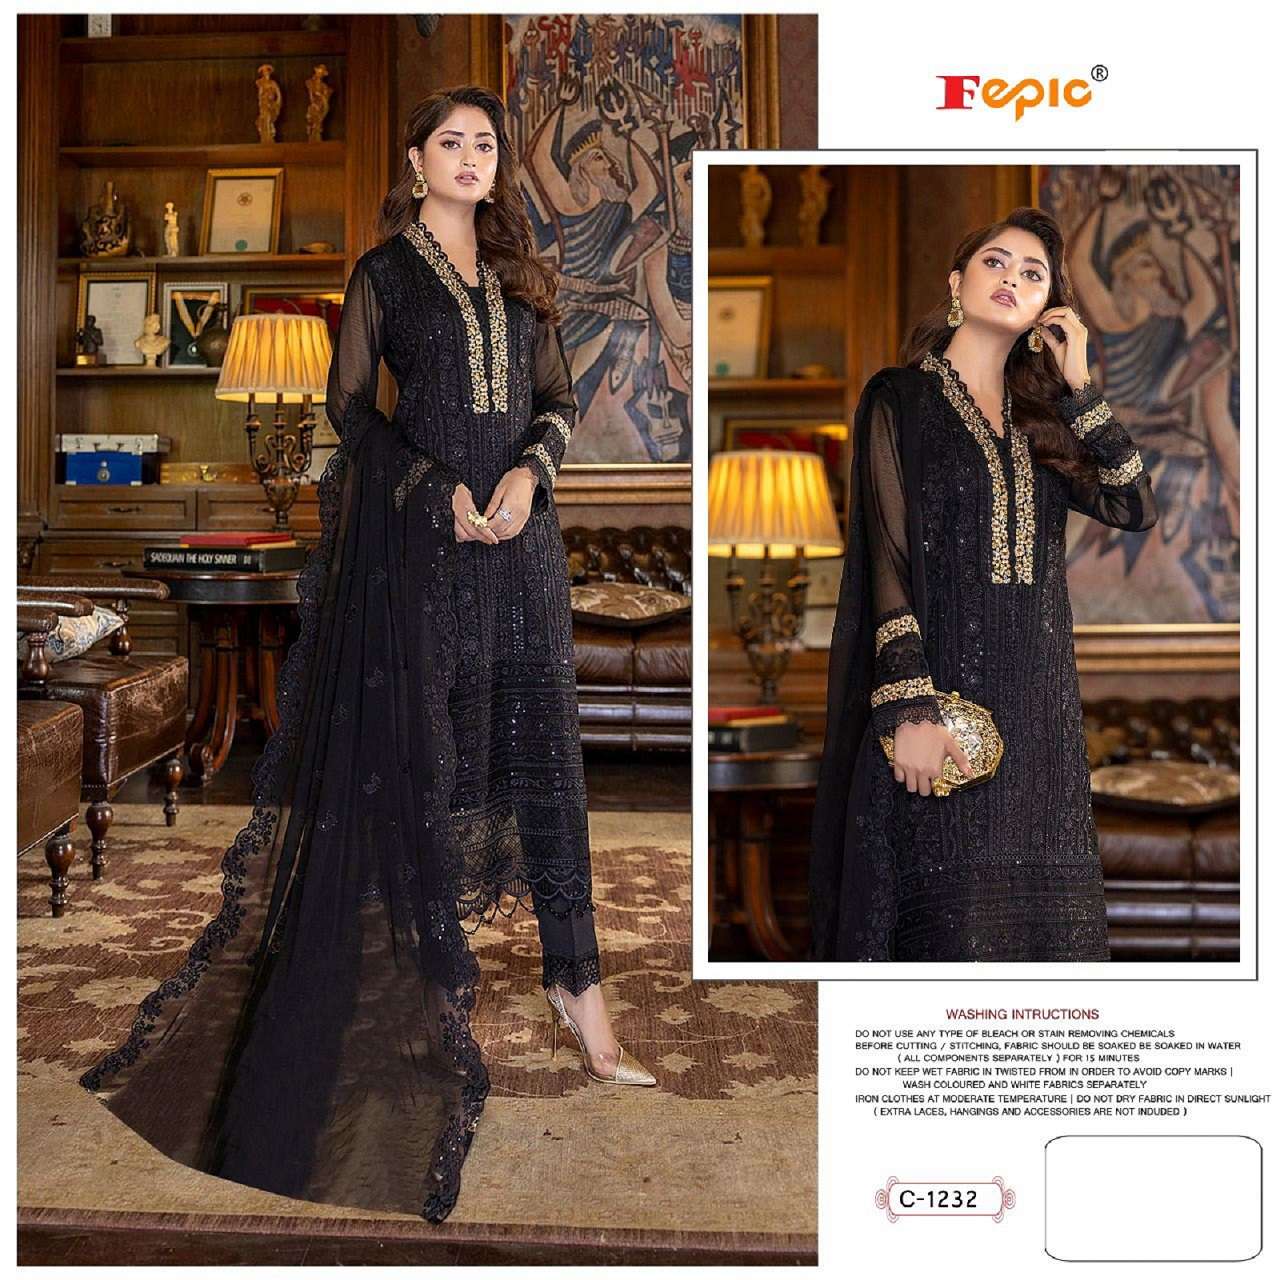 Buy Georgette Fabric Based Salwar Kameez Online at best Price